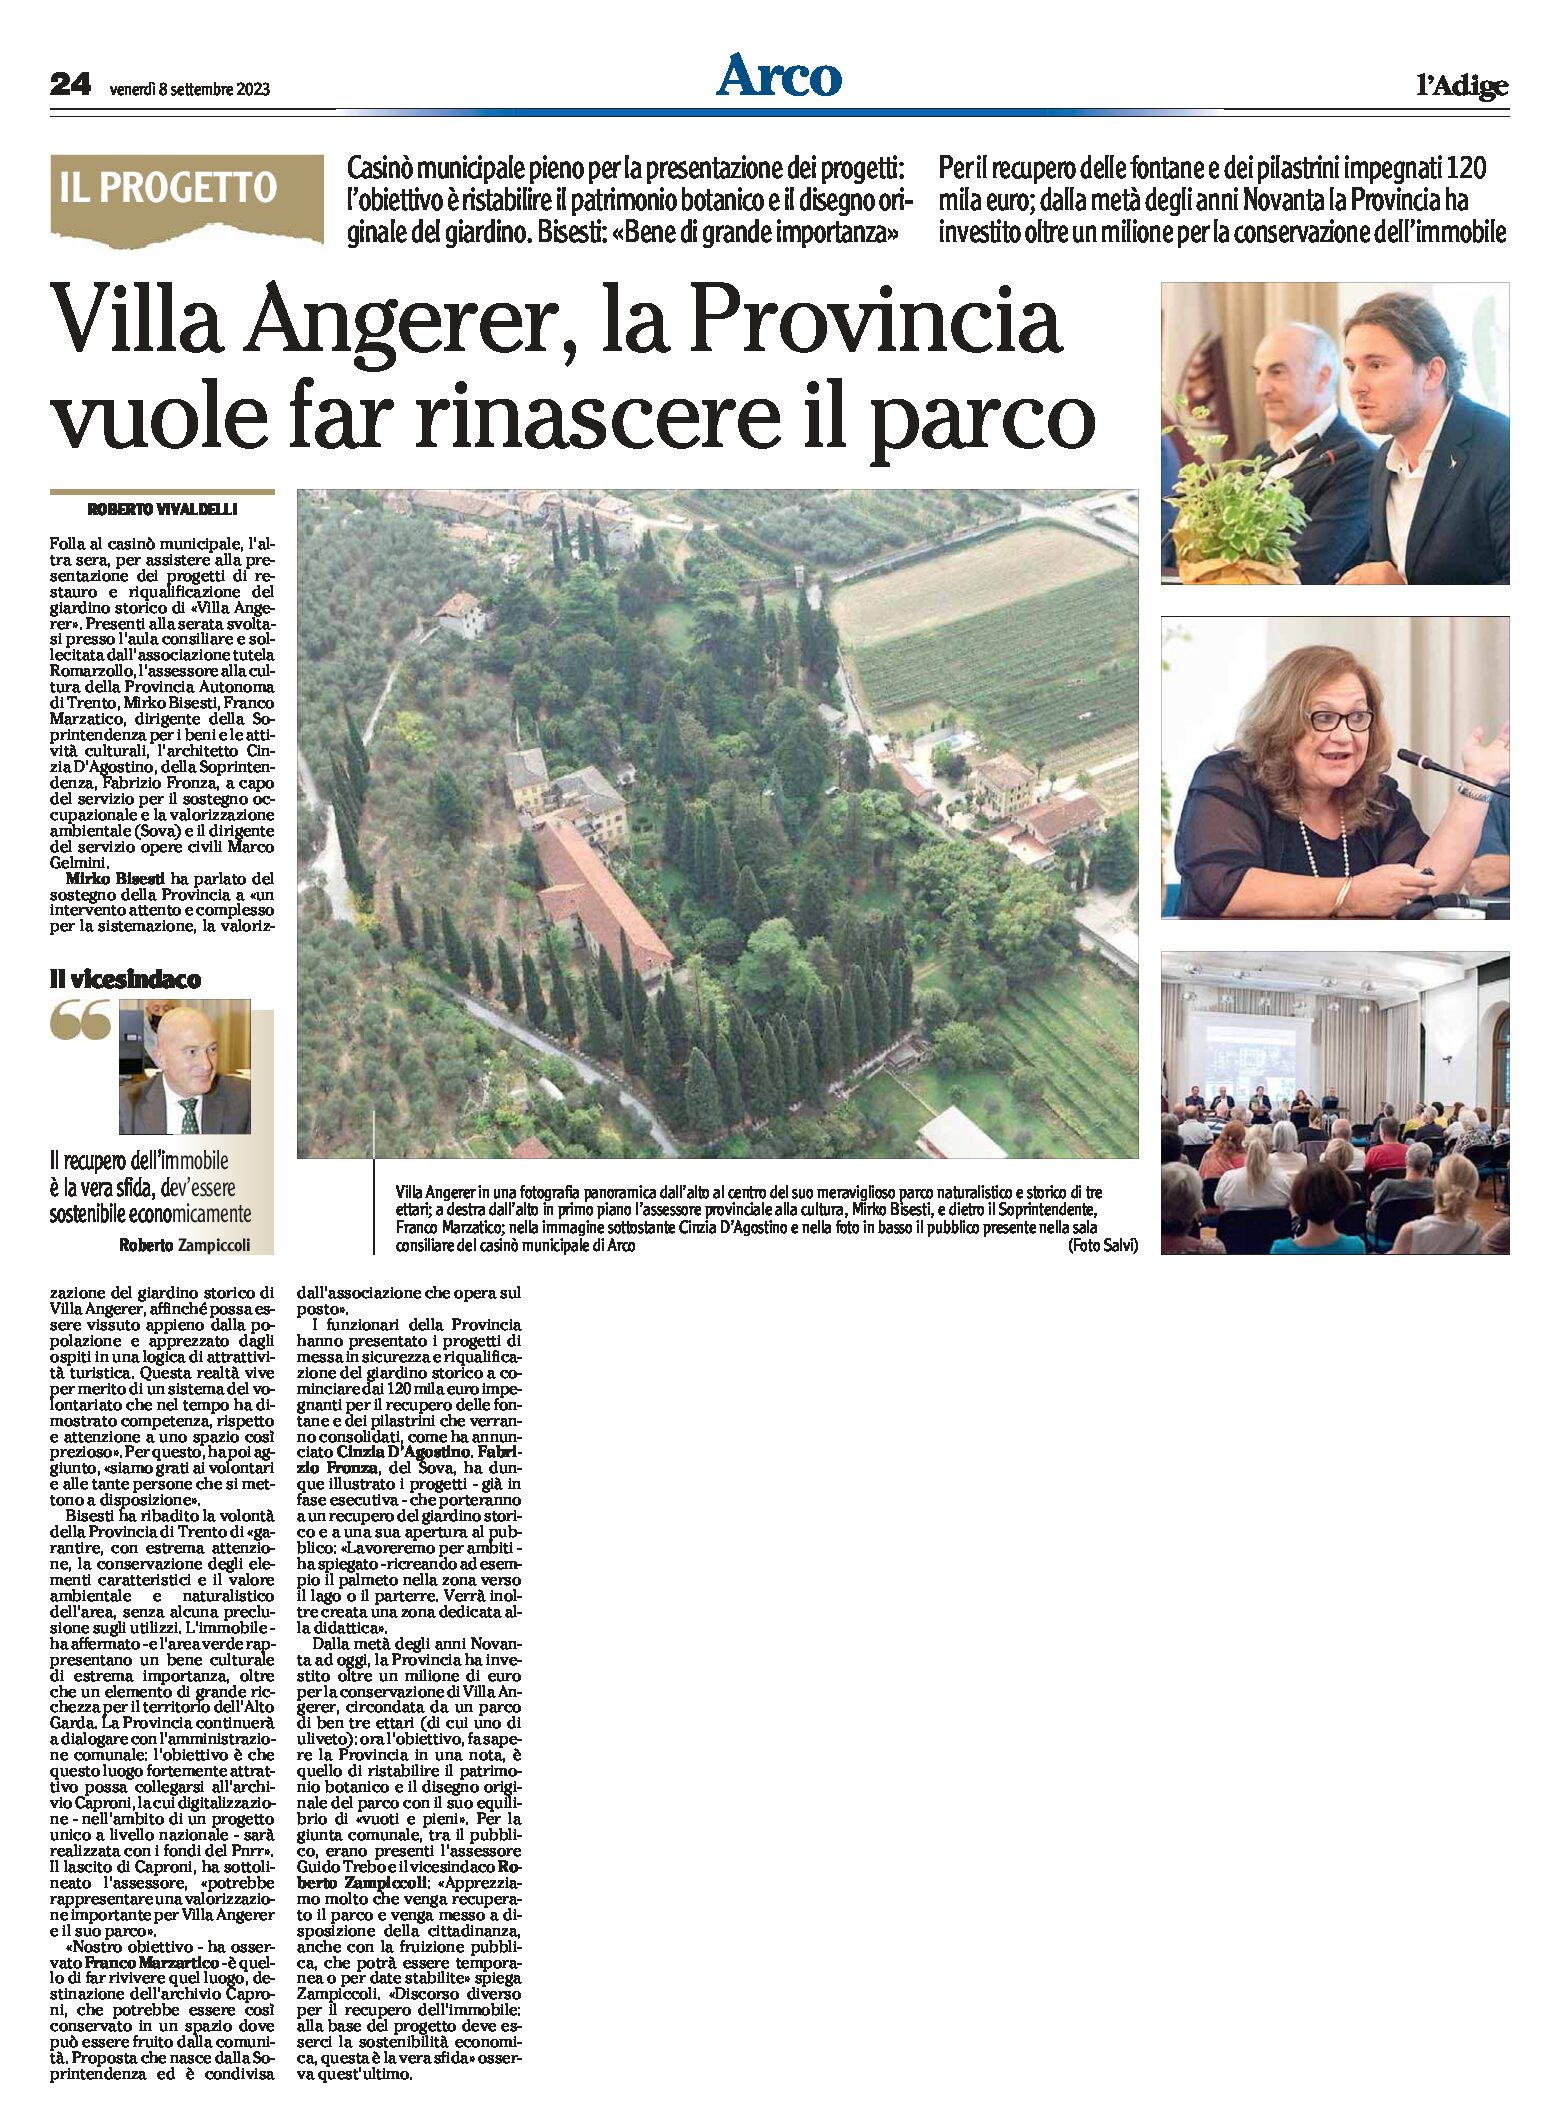 Arco, Villa Angerer: la Provincia vuol far rinascere il parco